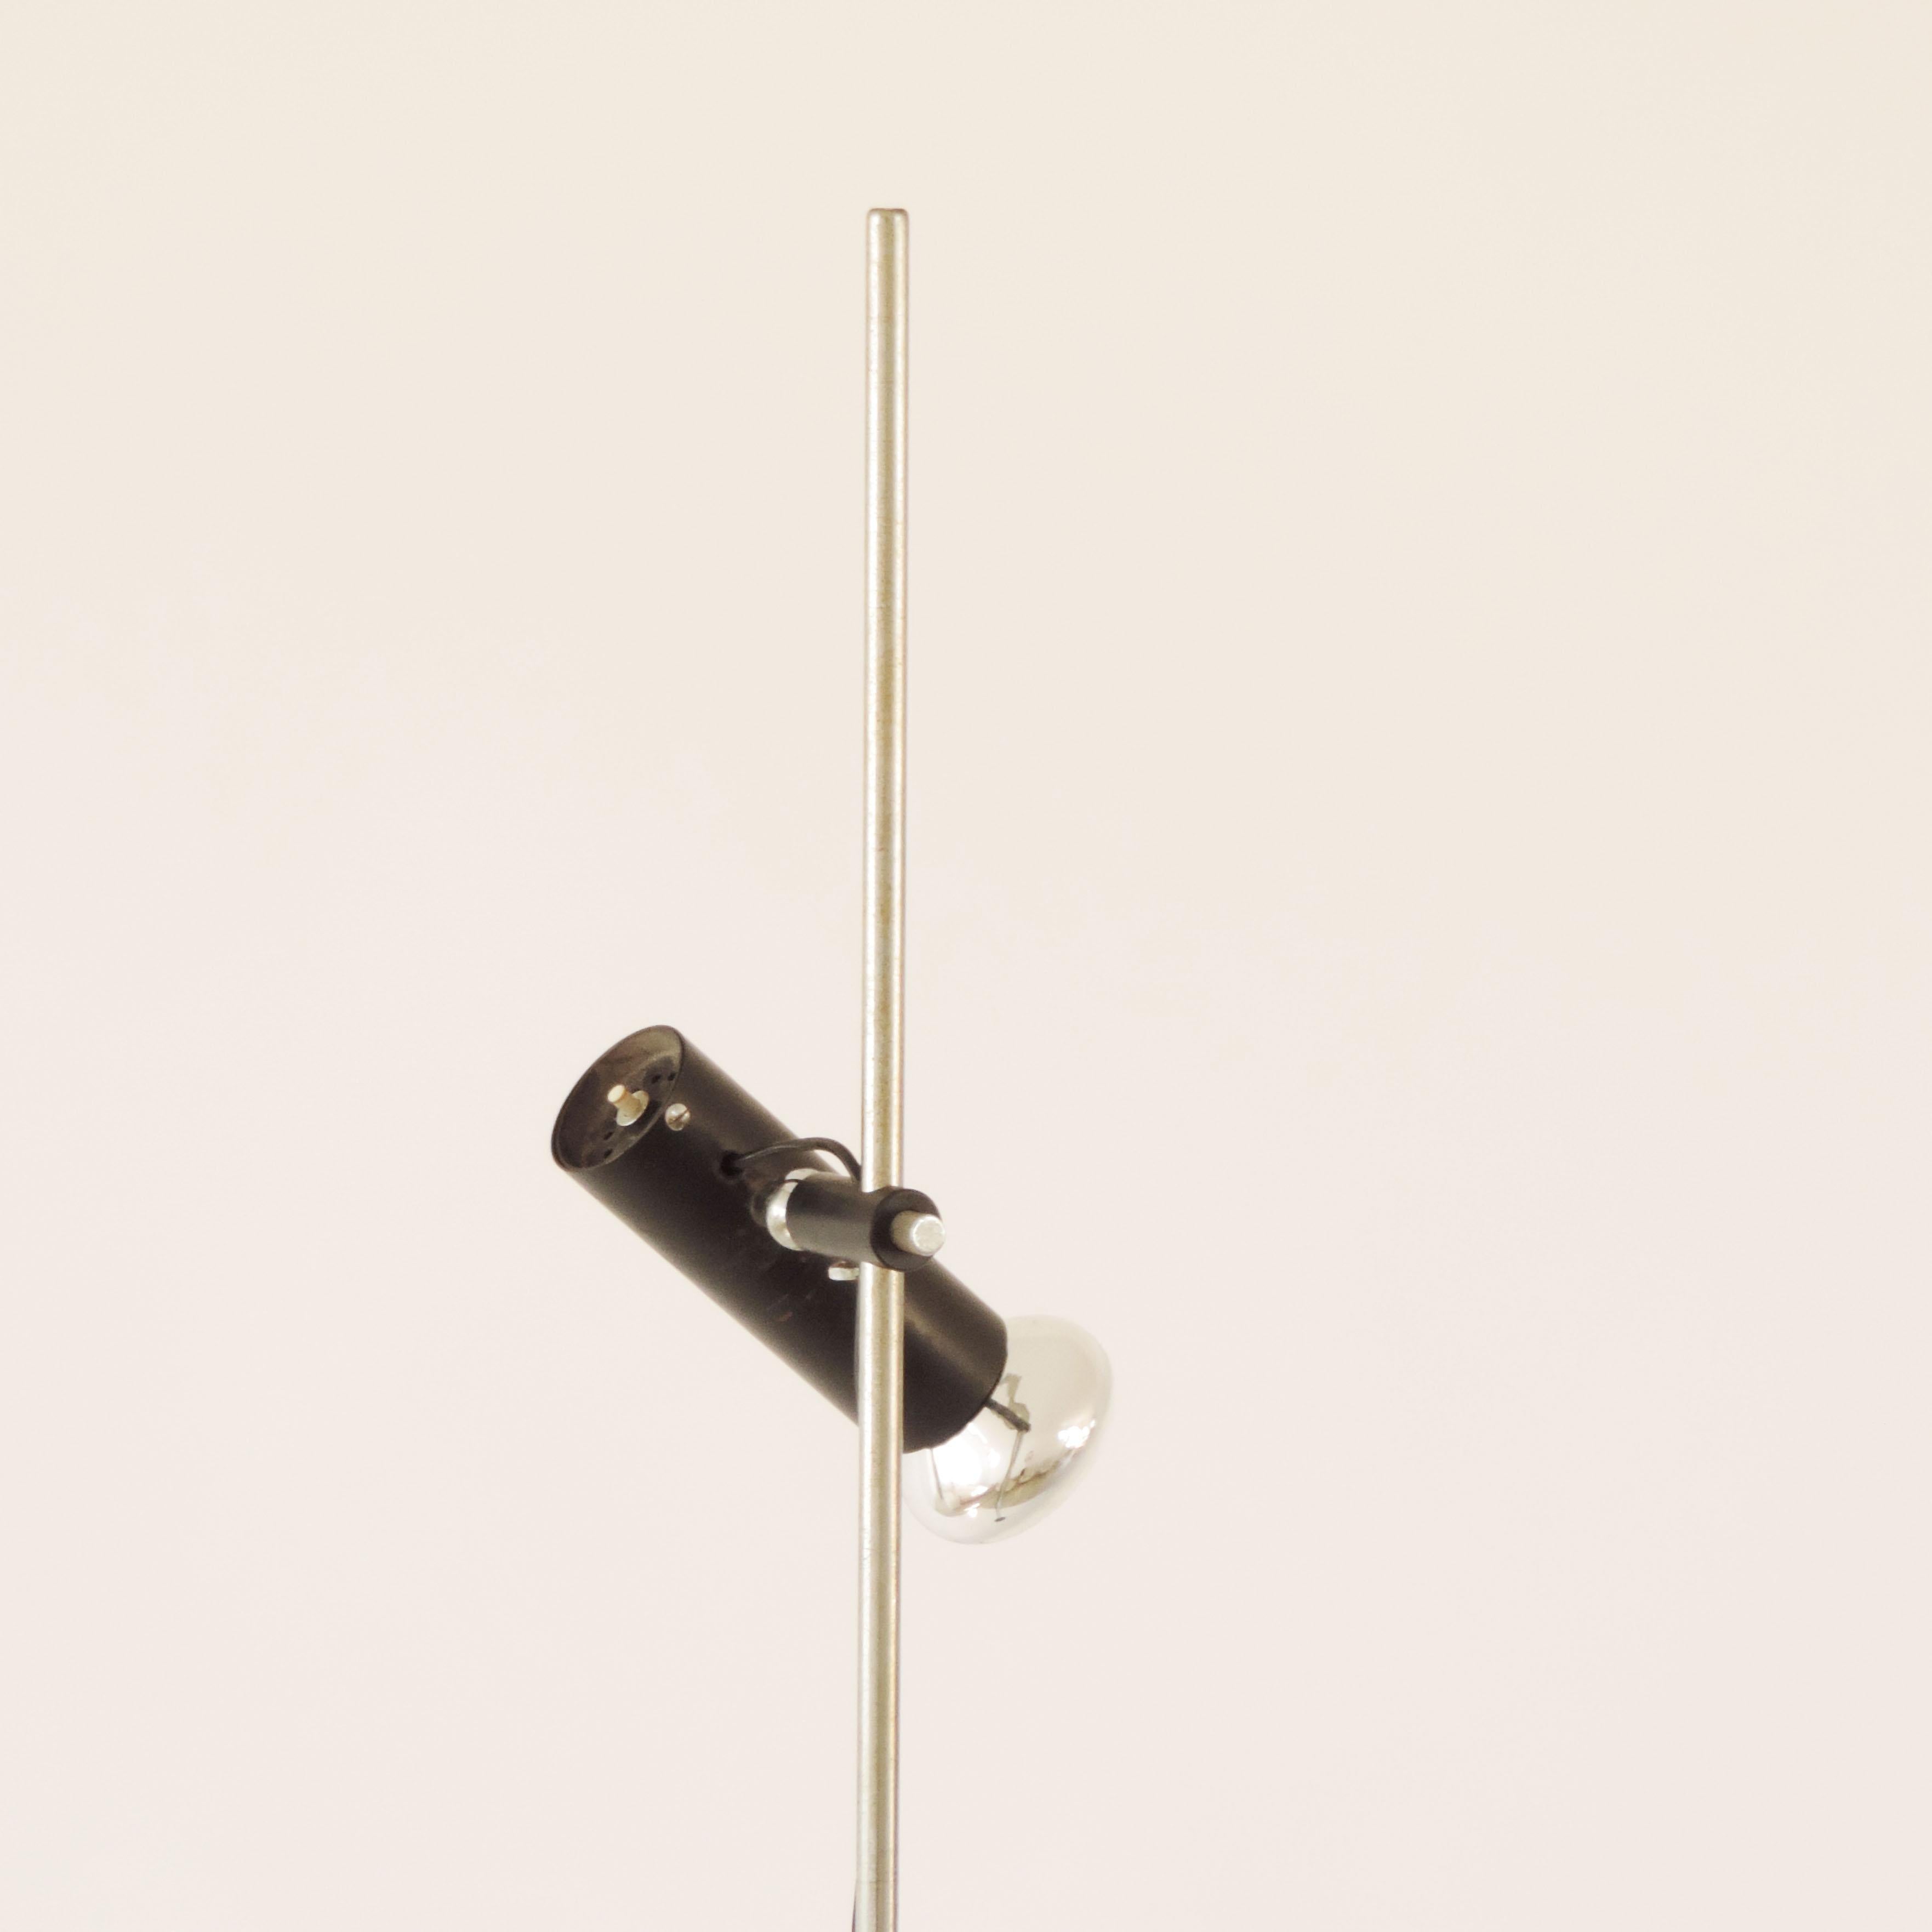 Gino Sarfatti Model 1055 adjustable floor lamp for Arteluce, Italy 1955.